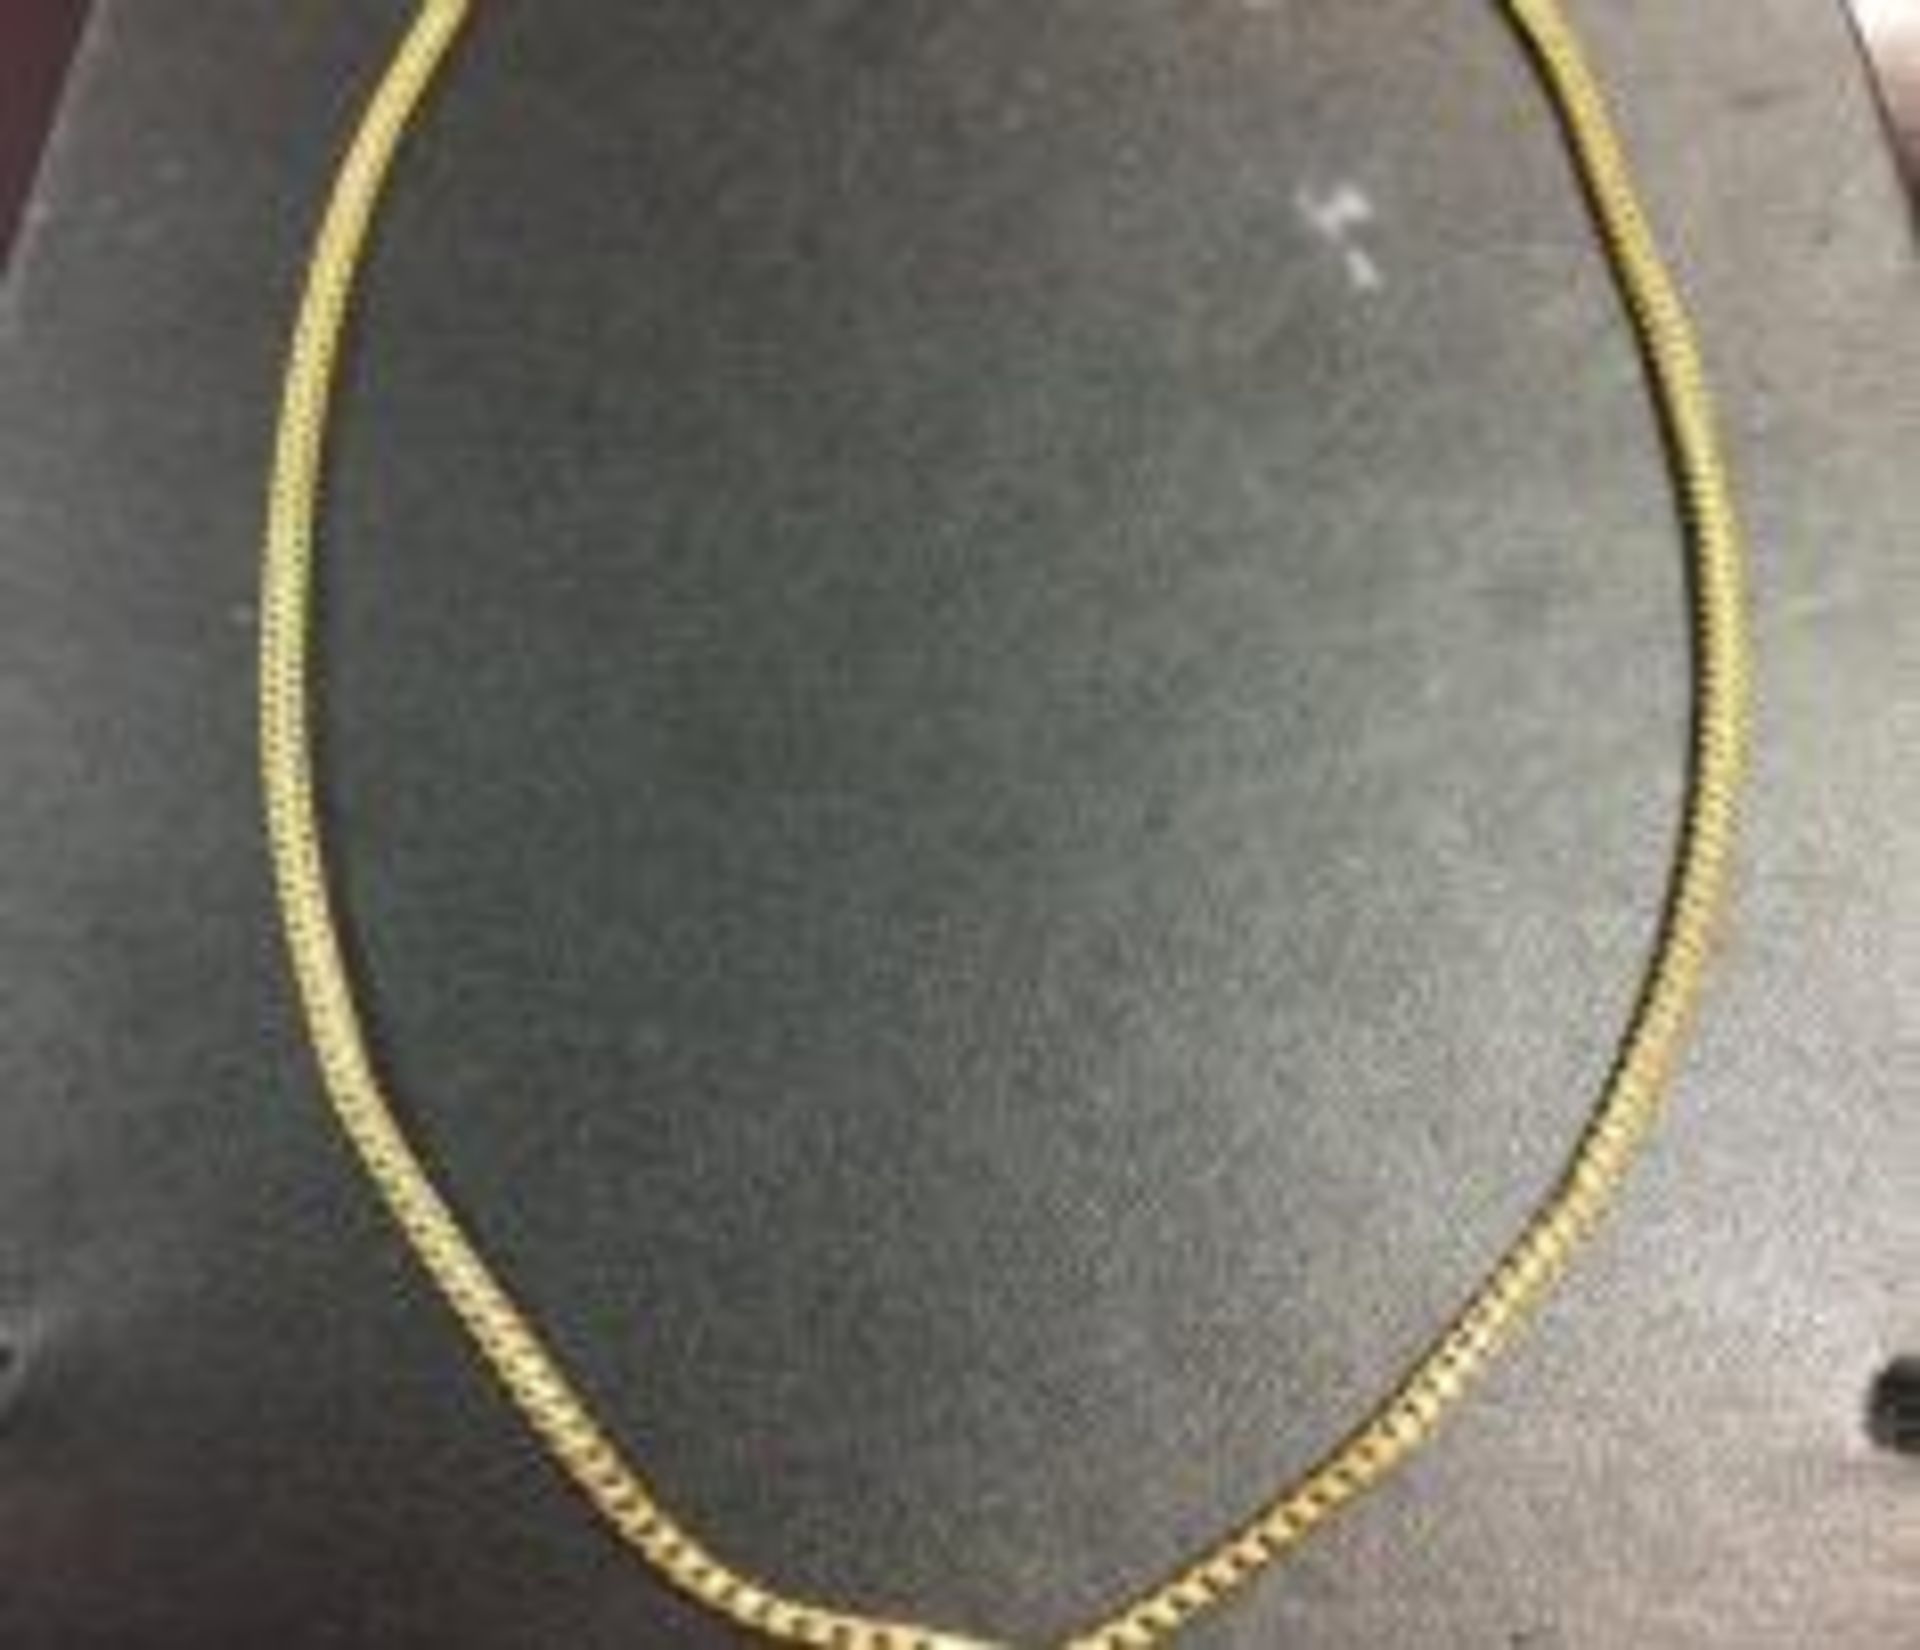 9ct yellow gold chain (16.5g)